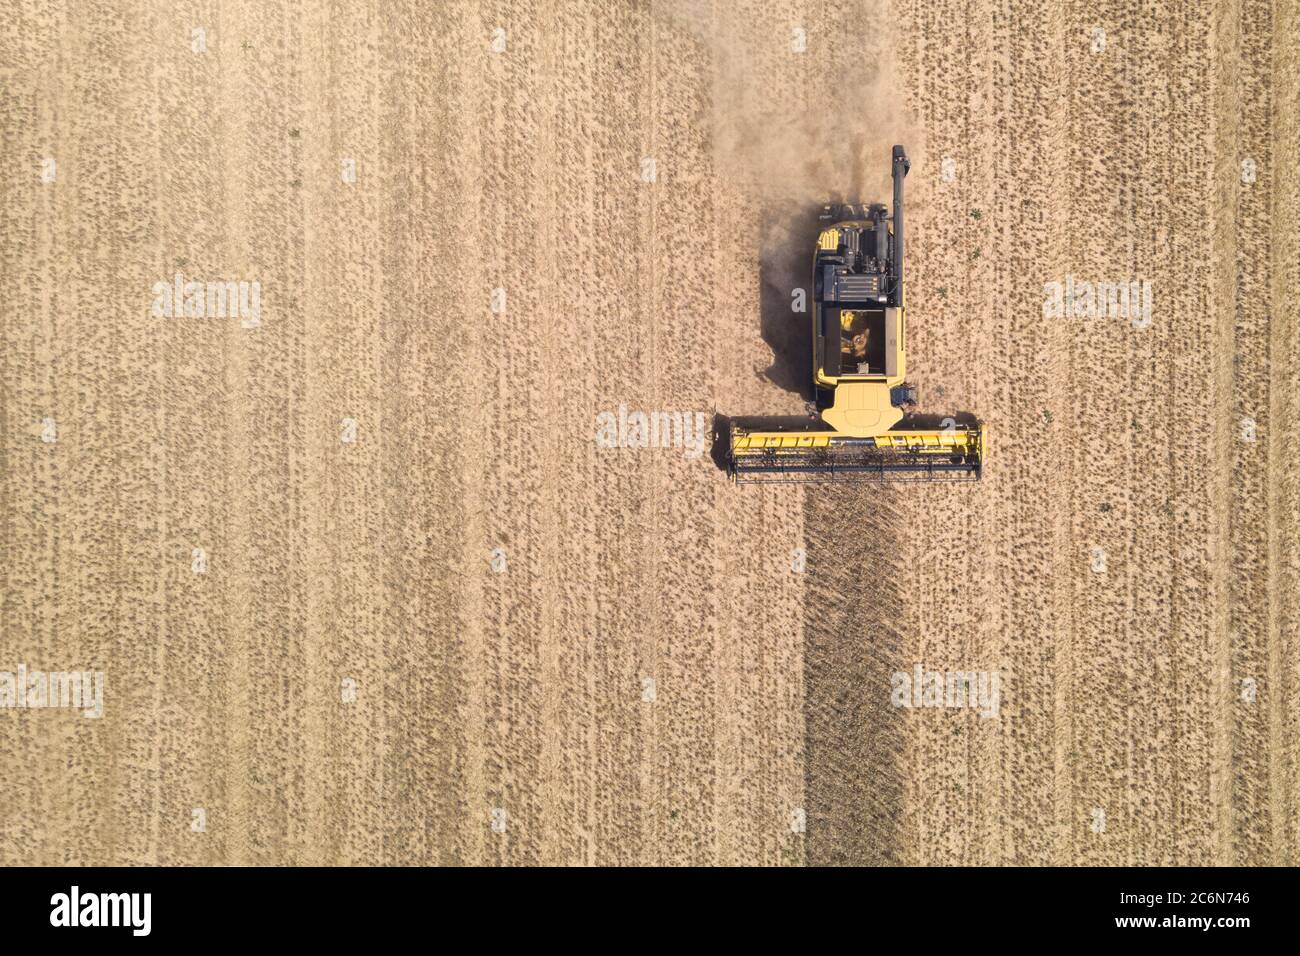 vue aérienne d'une moissonneuse-batteuse moderne en action, mettant fin à la récolte d'un champ de blé Banque D'Images